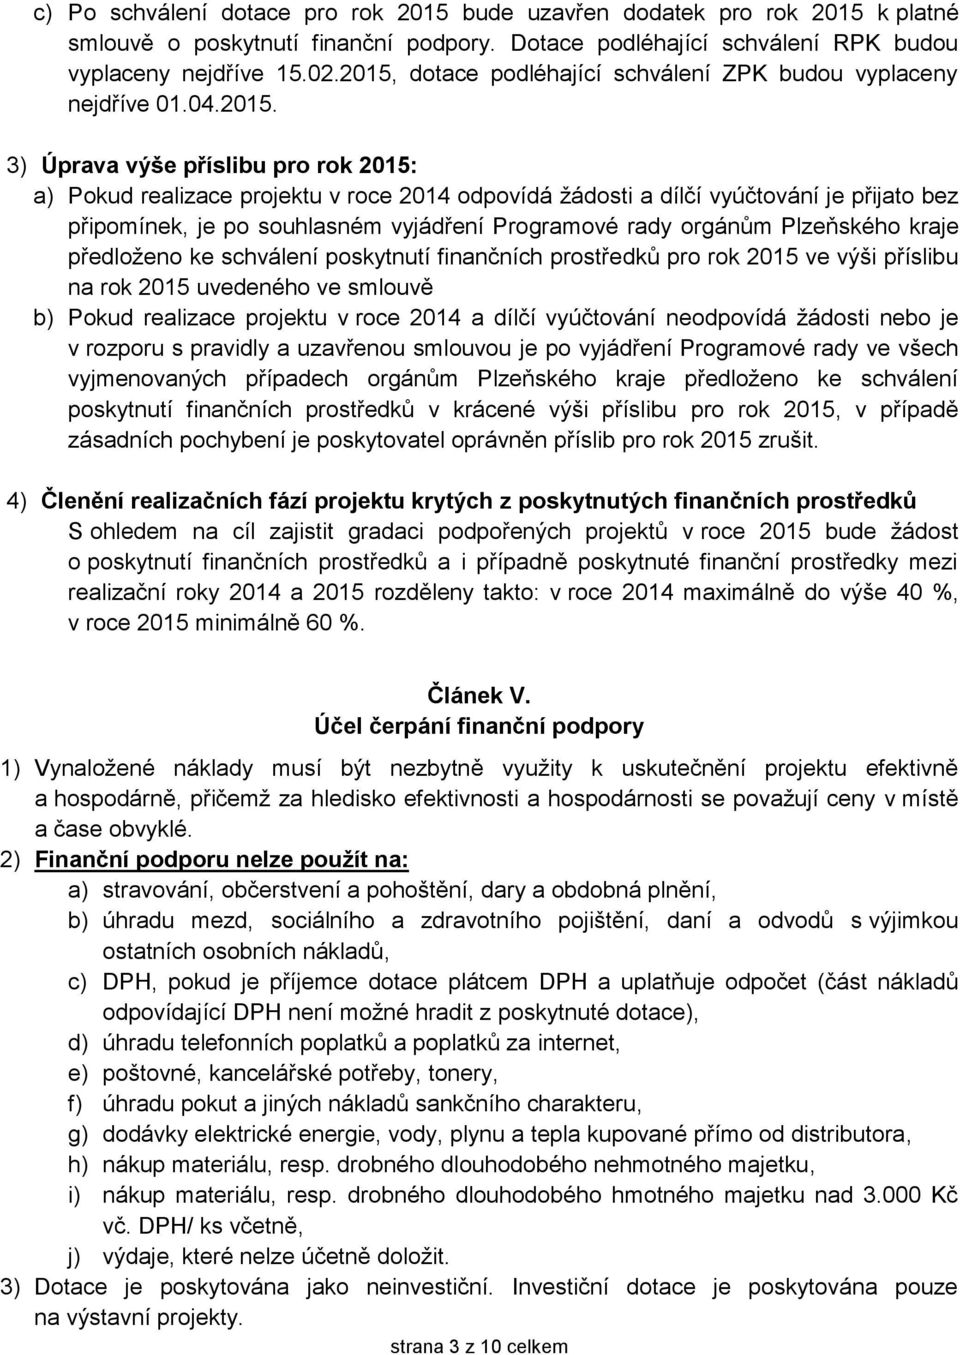 přijato bez připomínek, je po souhlasném vyjádření Programové rady orgánům Plzeňského kraje předloženo ke schválení poskytnutí finančních prostředků pro rok 2015 ve výši příslibu na rok 2015